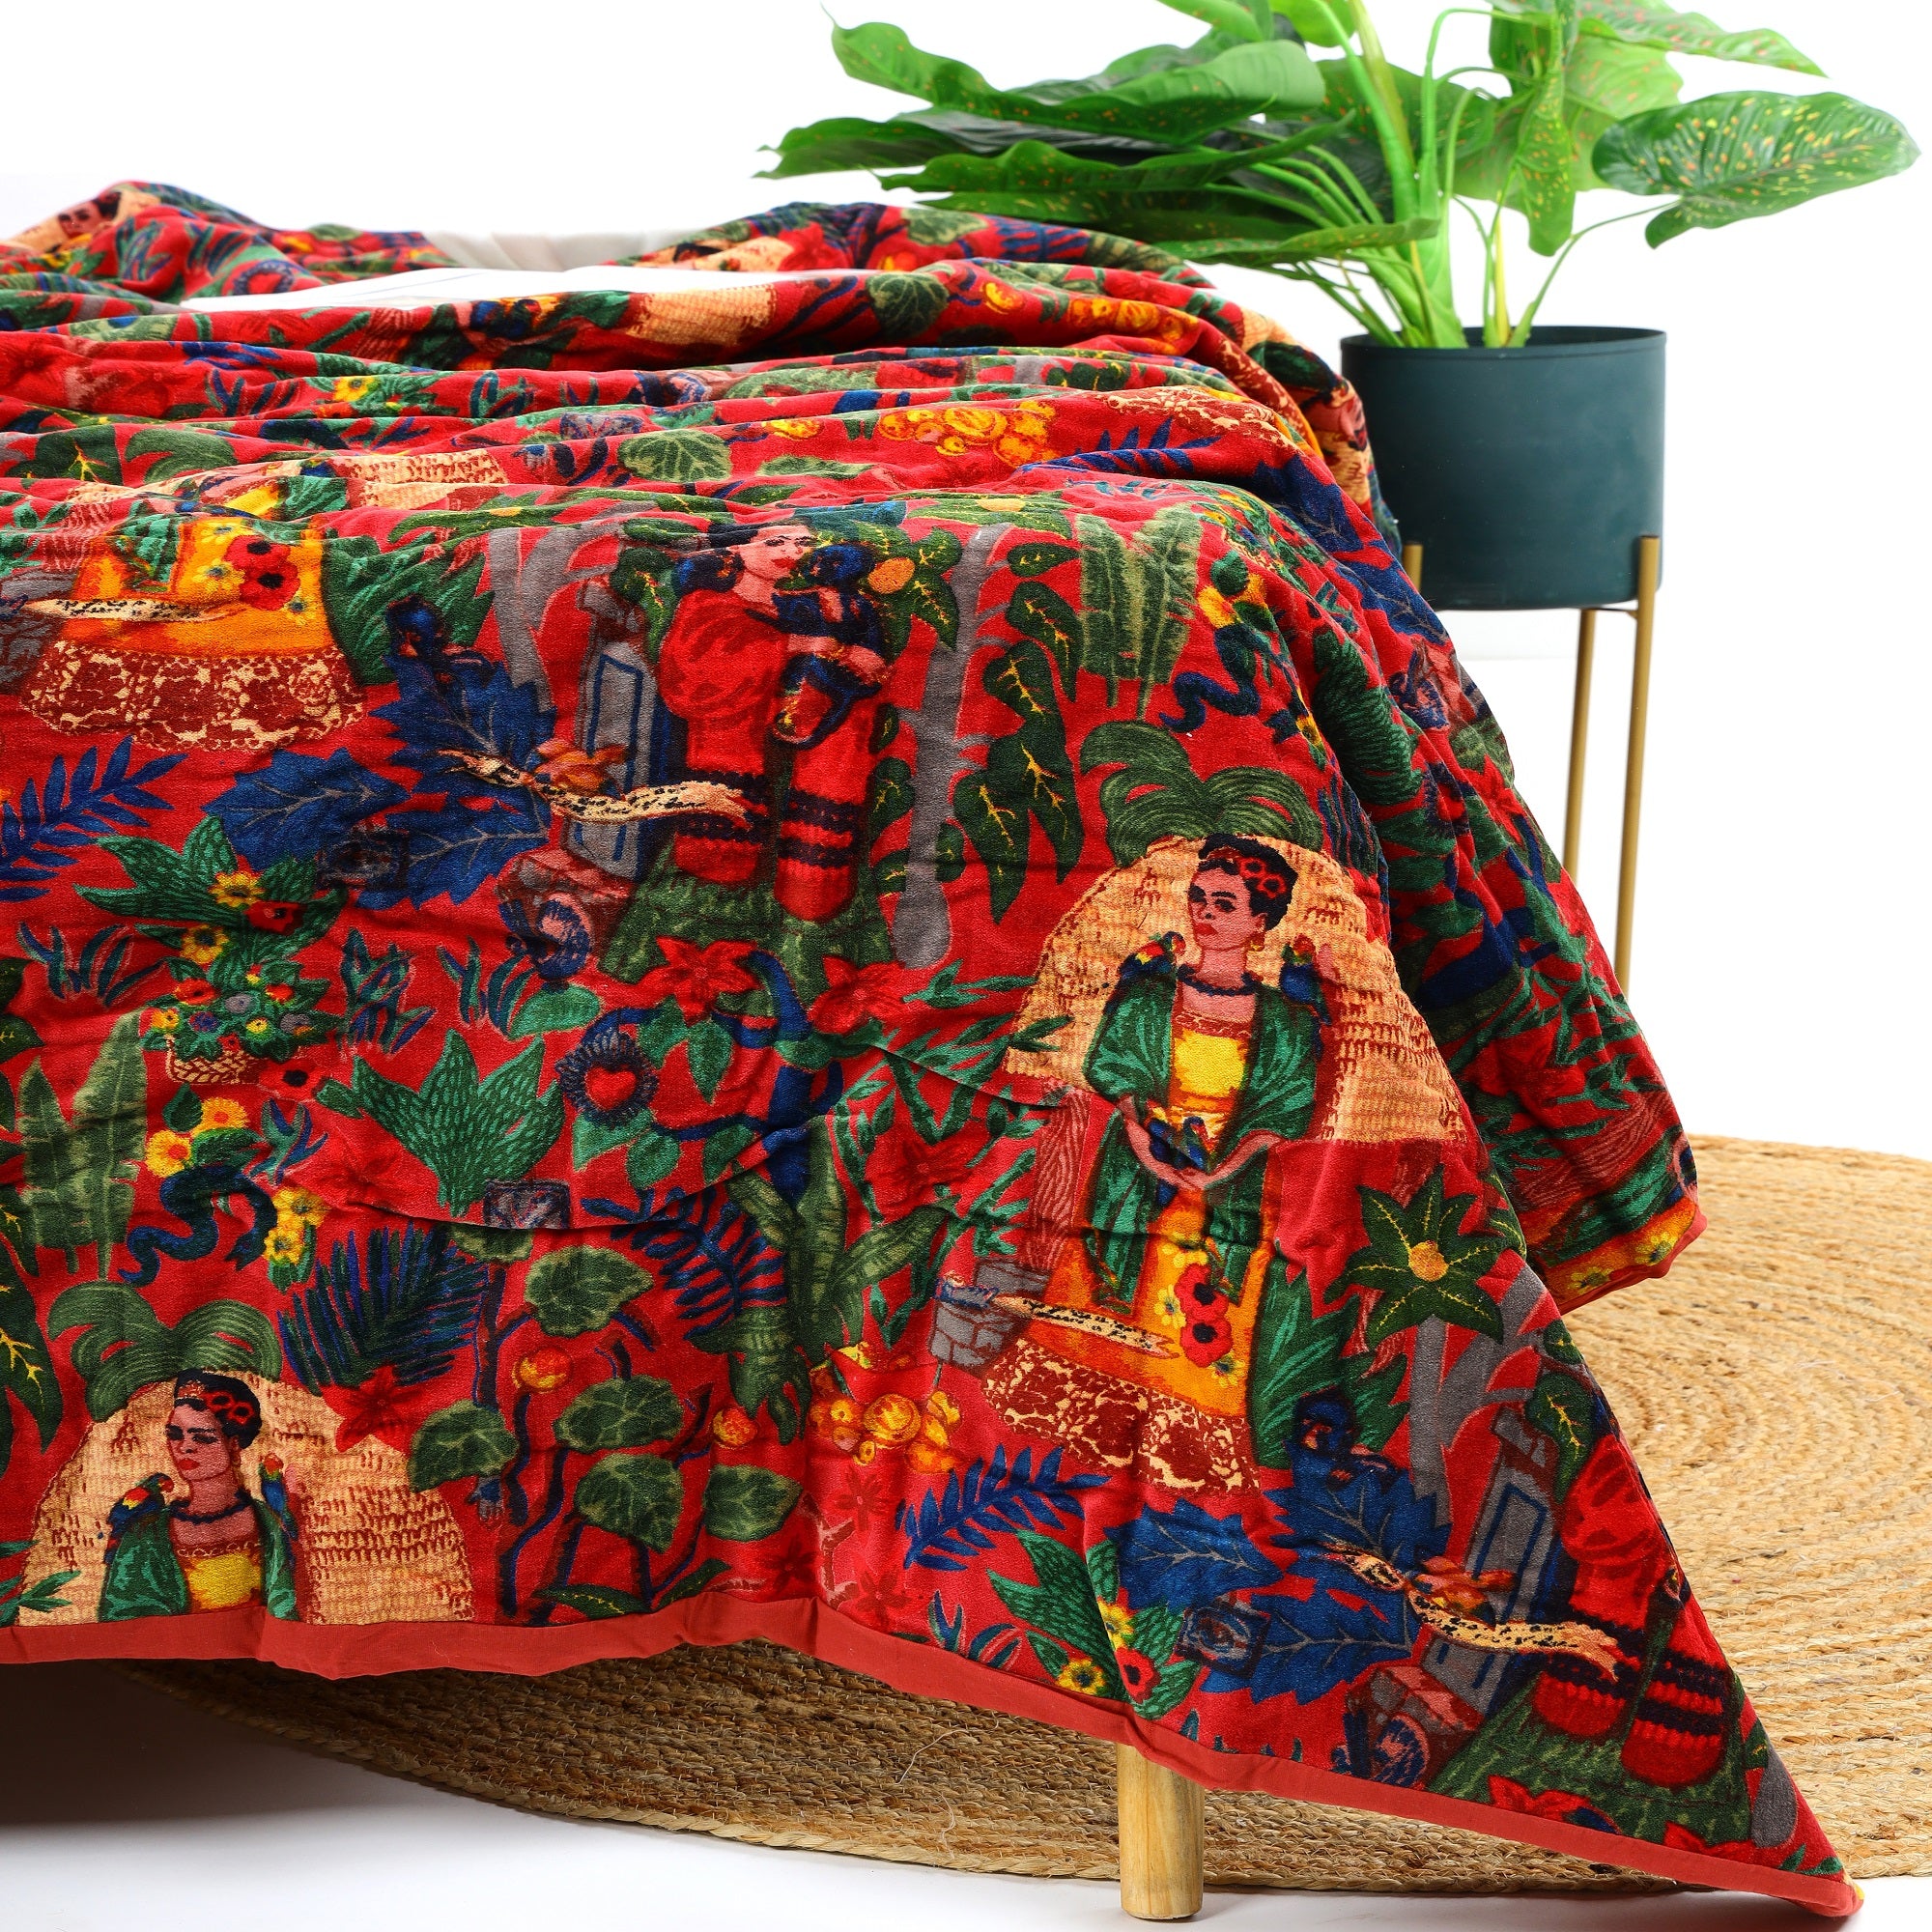 Velvet Frida Kantha Quilt Cotton Quilt Patchwork Quilt Handamade Red Velvet Quilt Floral Quilt Comforter Bedspread Blanket Bedcover Indian